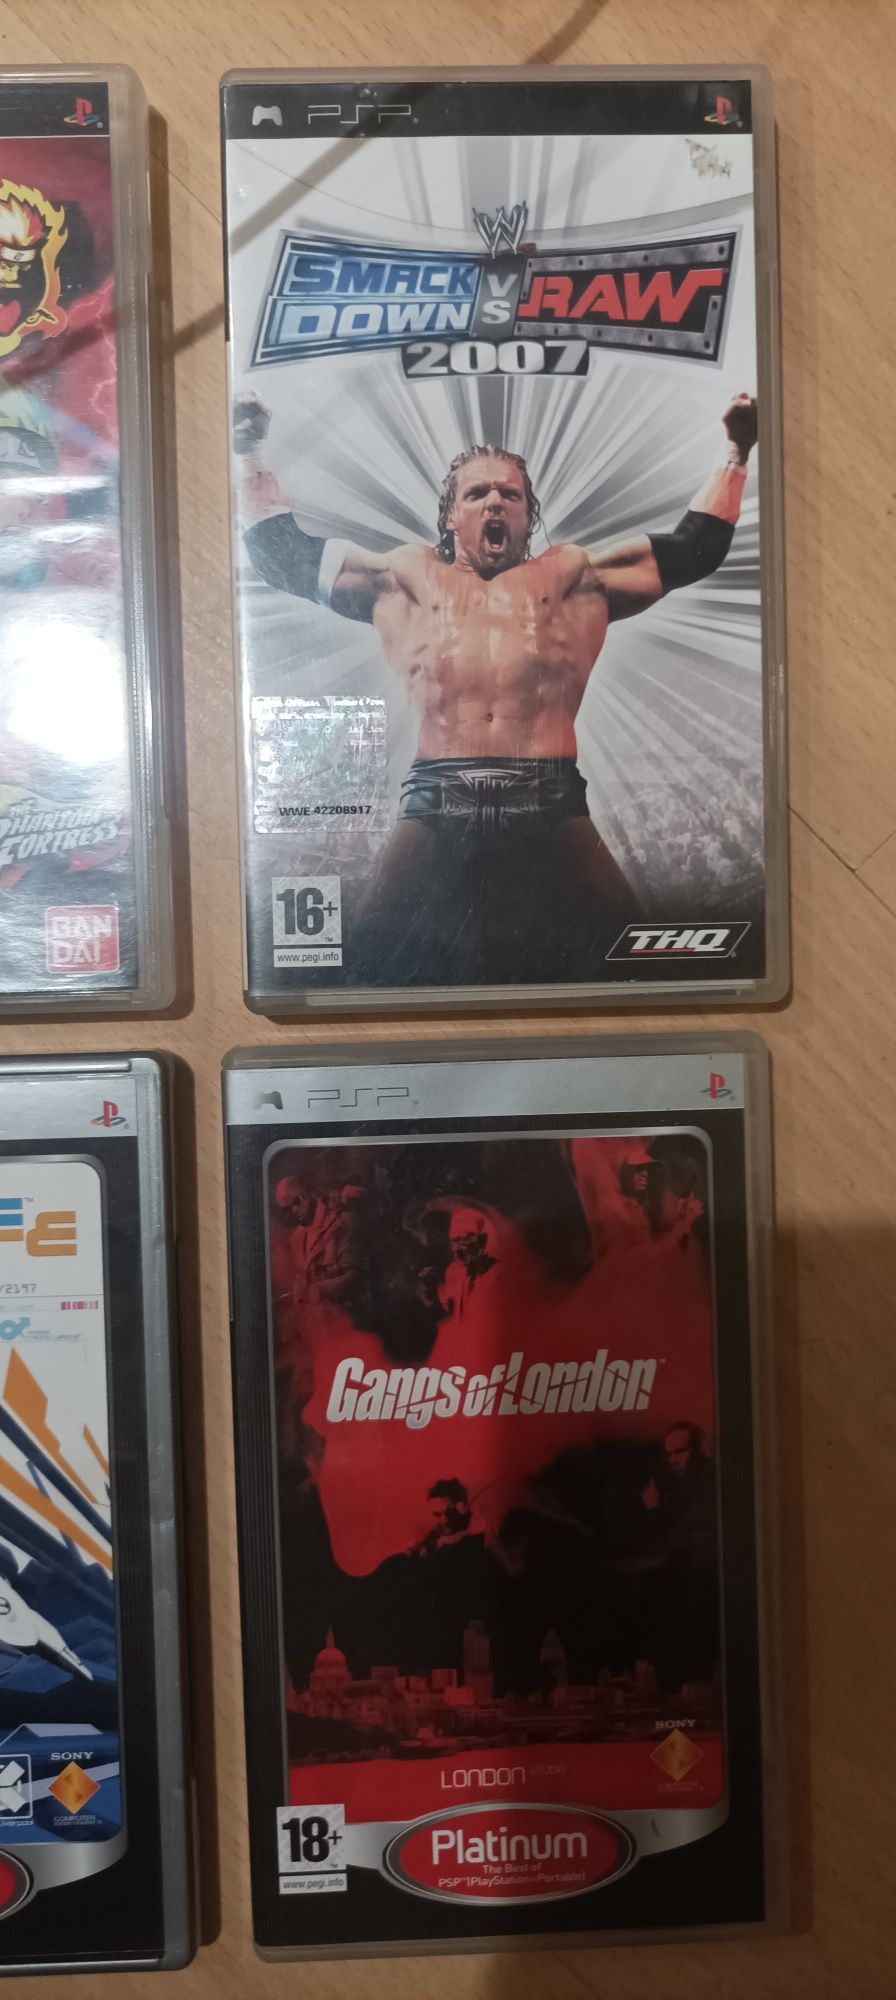 4 Jogos PSP e oferta de 2 filmes UMD caso leve os 4